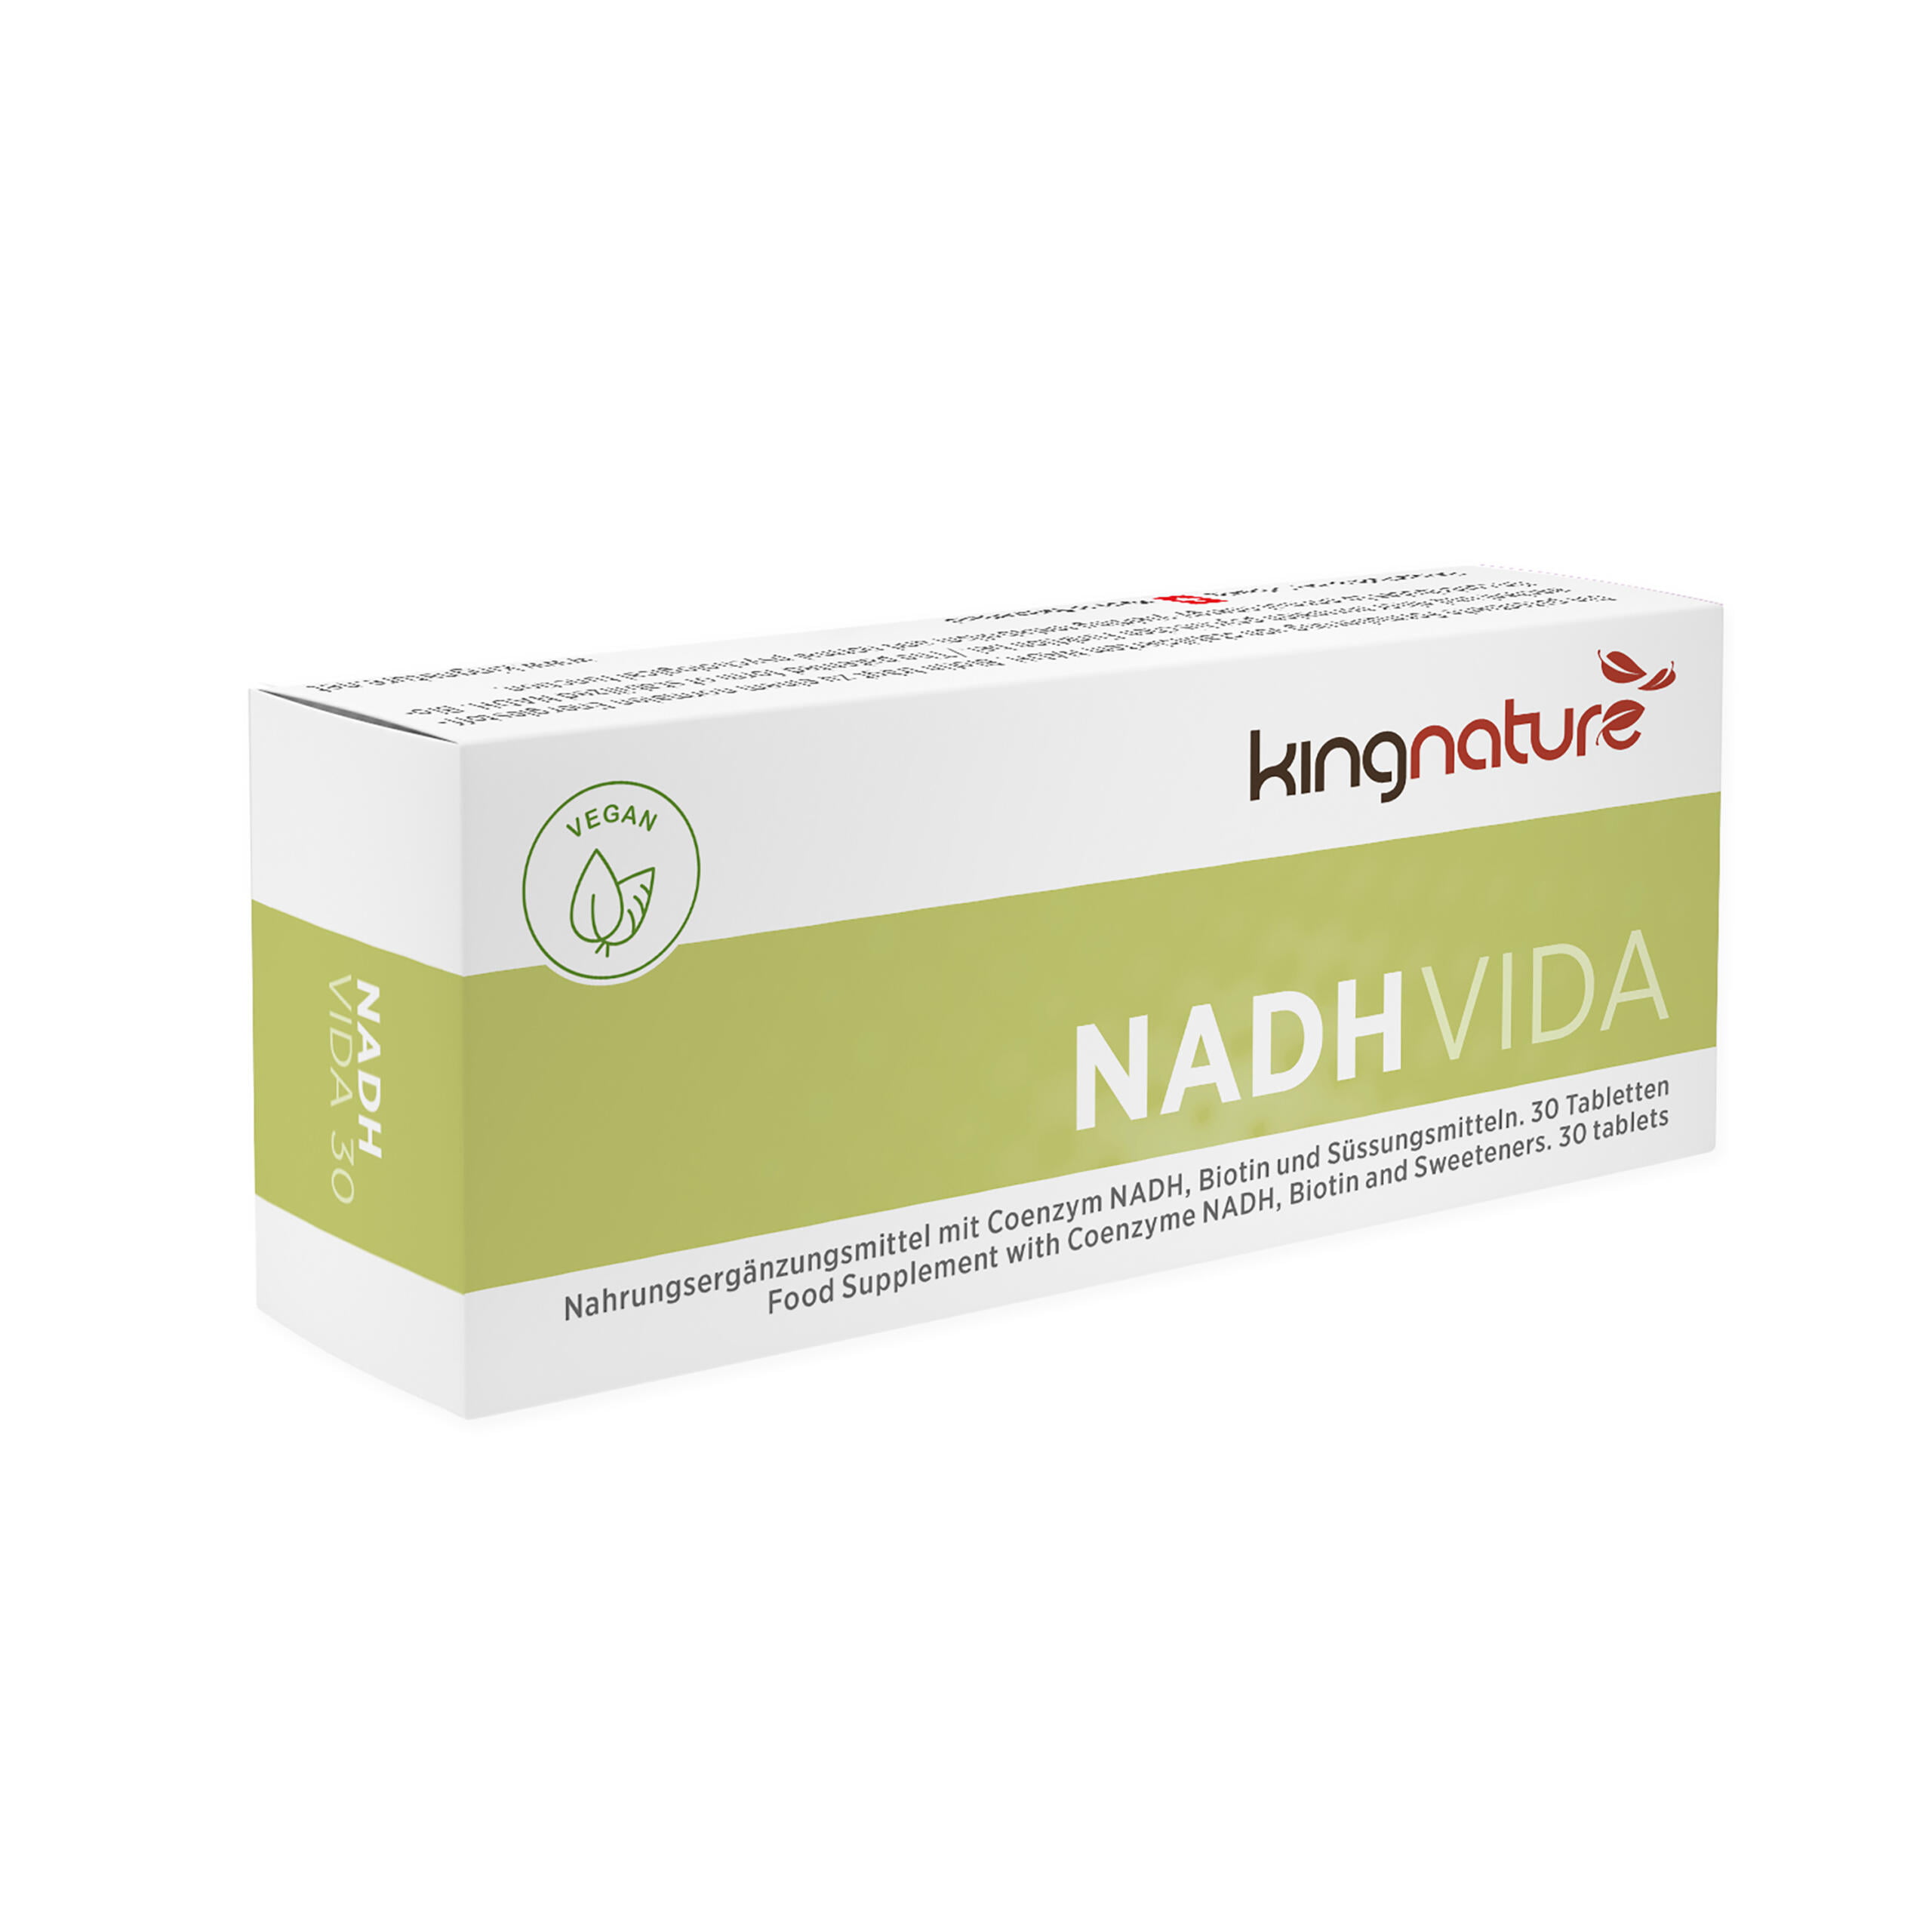 NADH Vida (10 Tabletten)